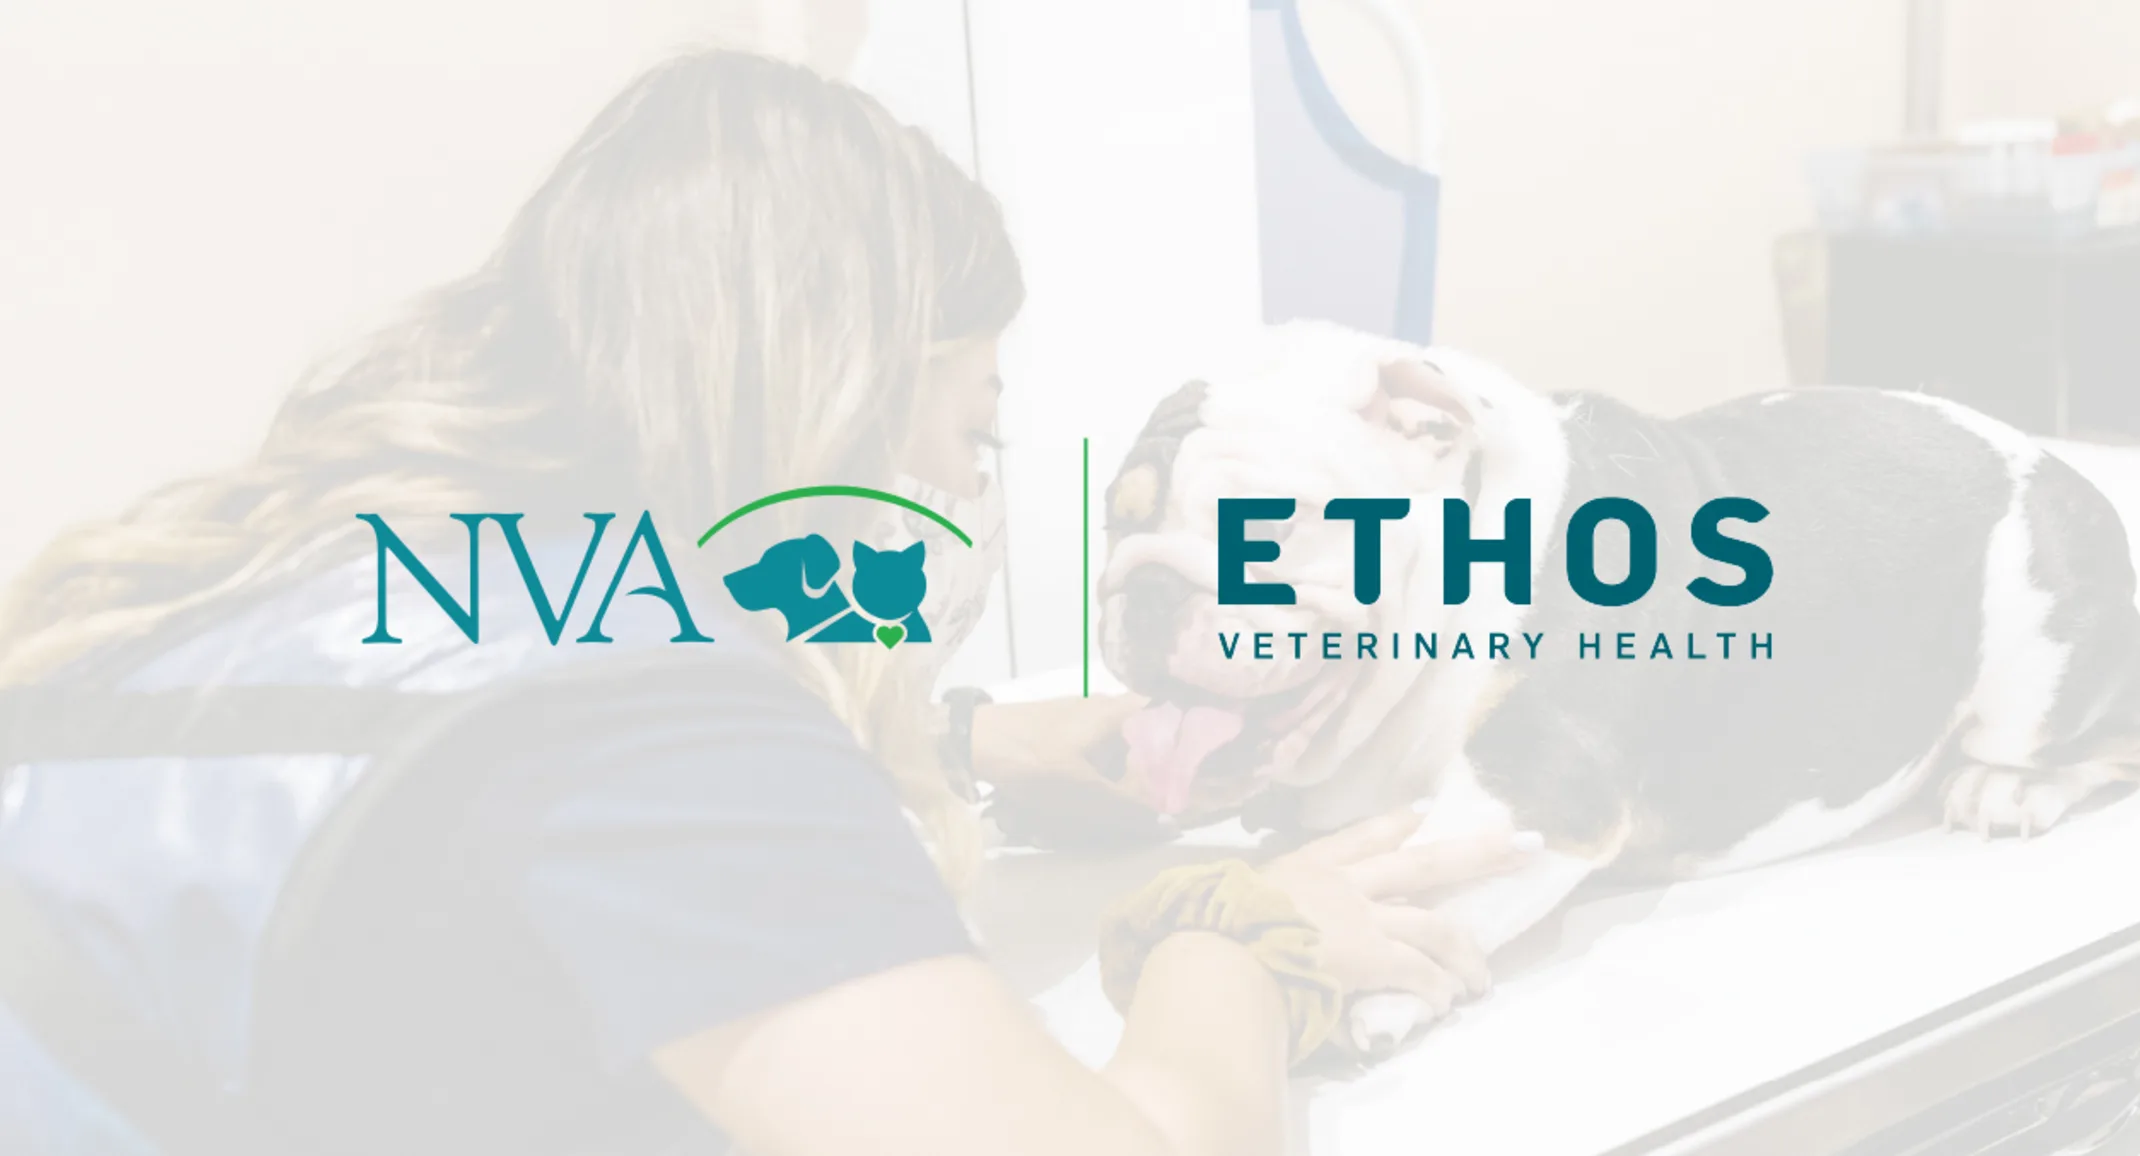 NVA and Ethos Veterinary Health Logos